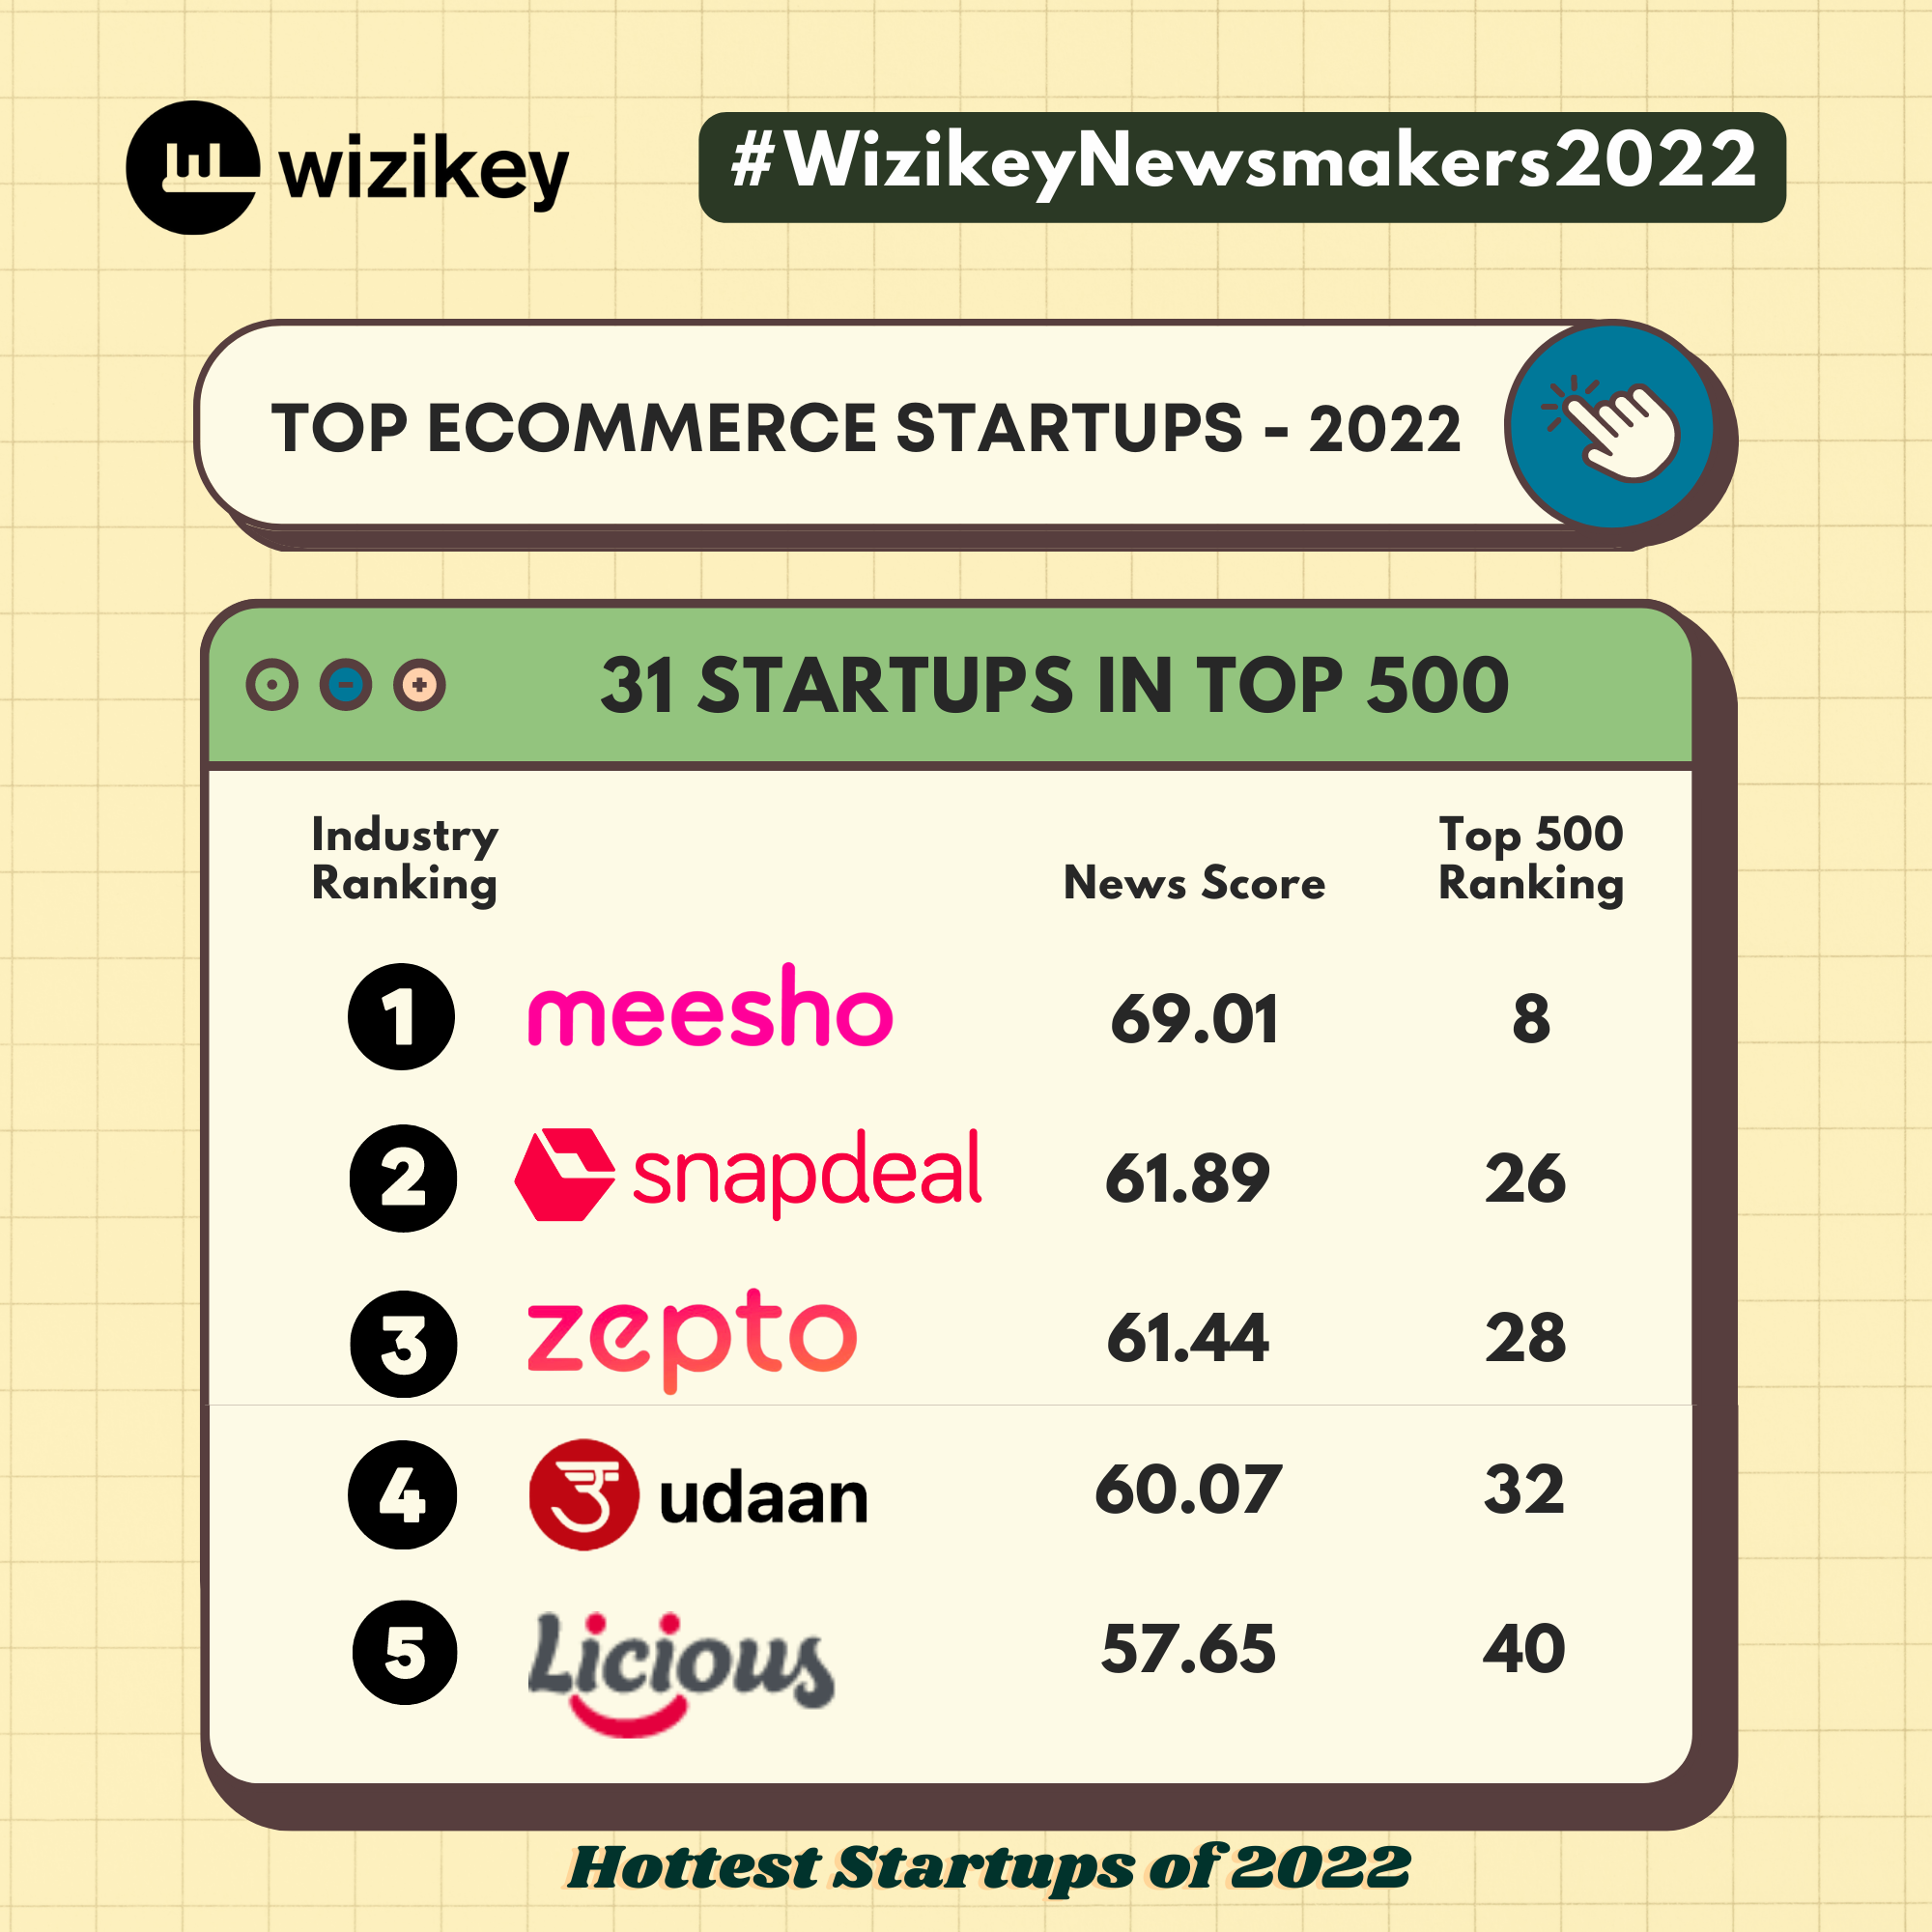 Top Ecommerce Startups